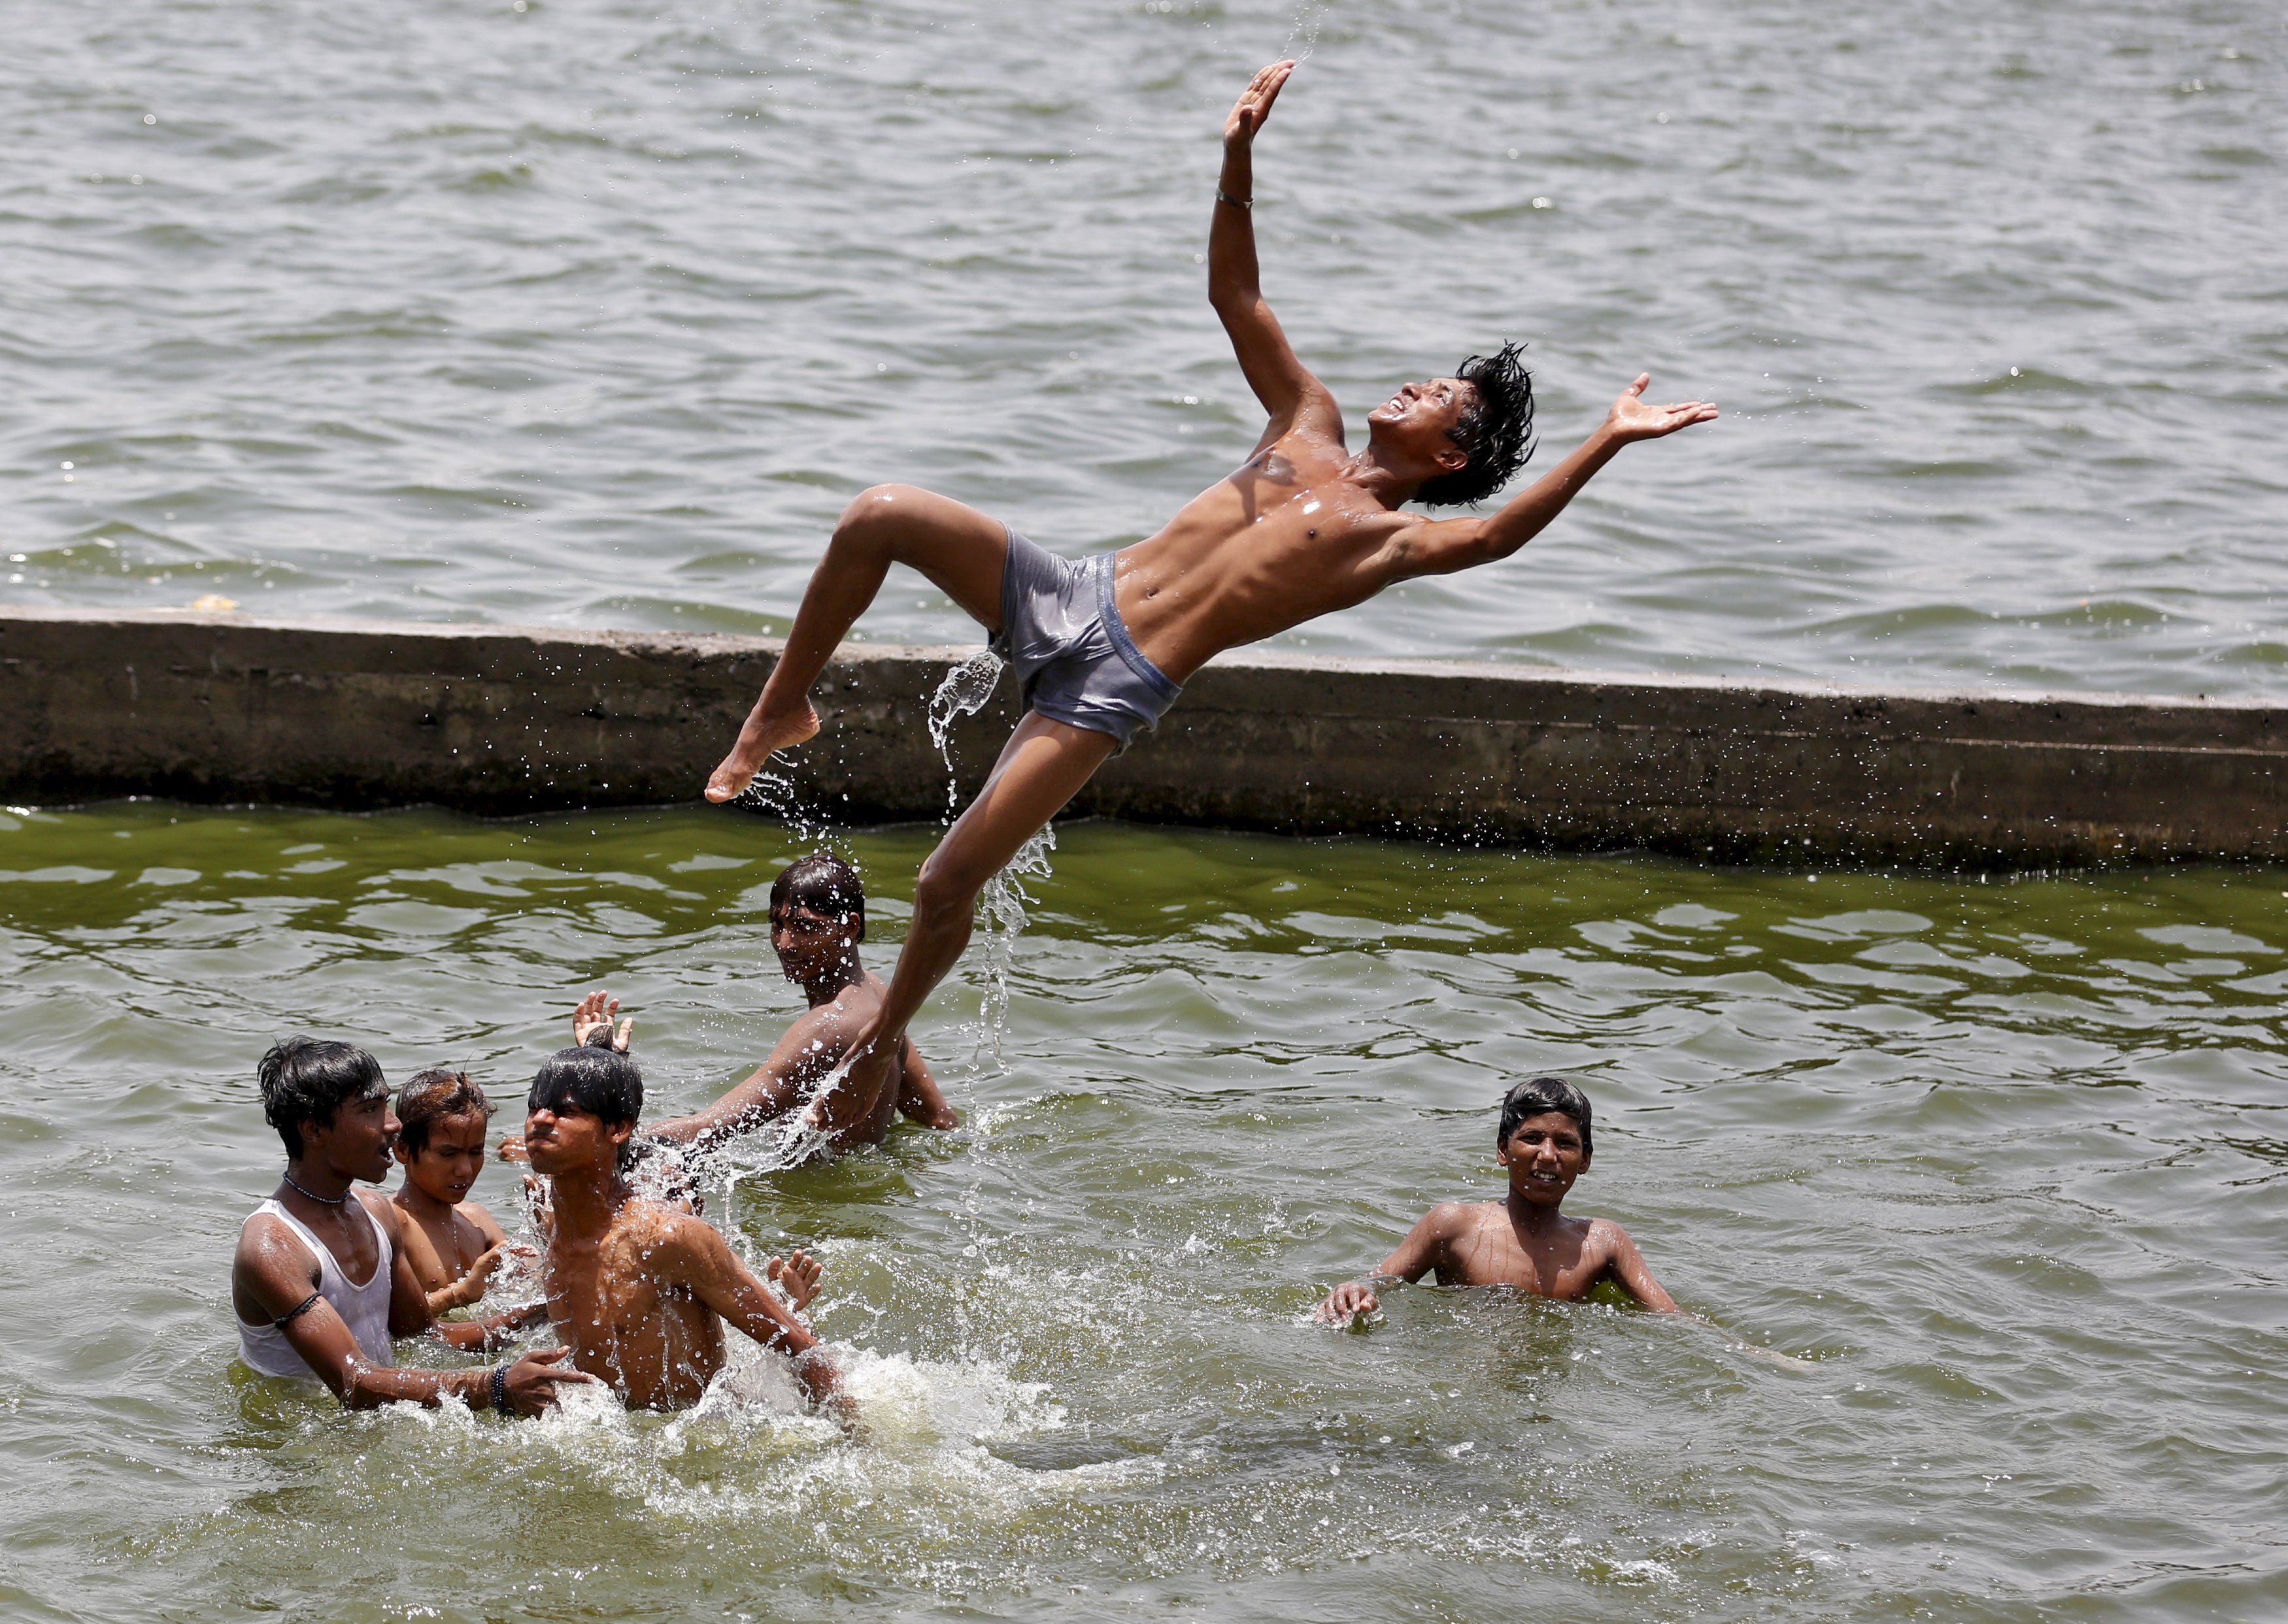 Купания страна. Мальчики на речке. Мальчики купаются в реке. Индия мальчики купаются.